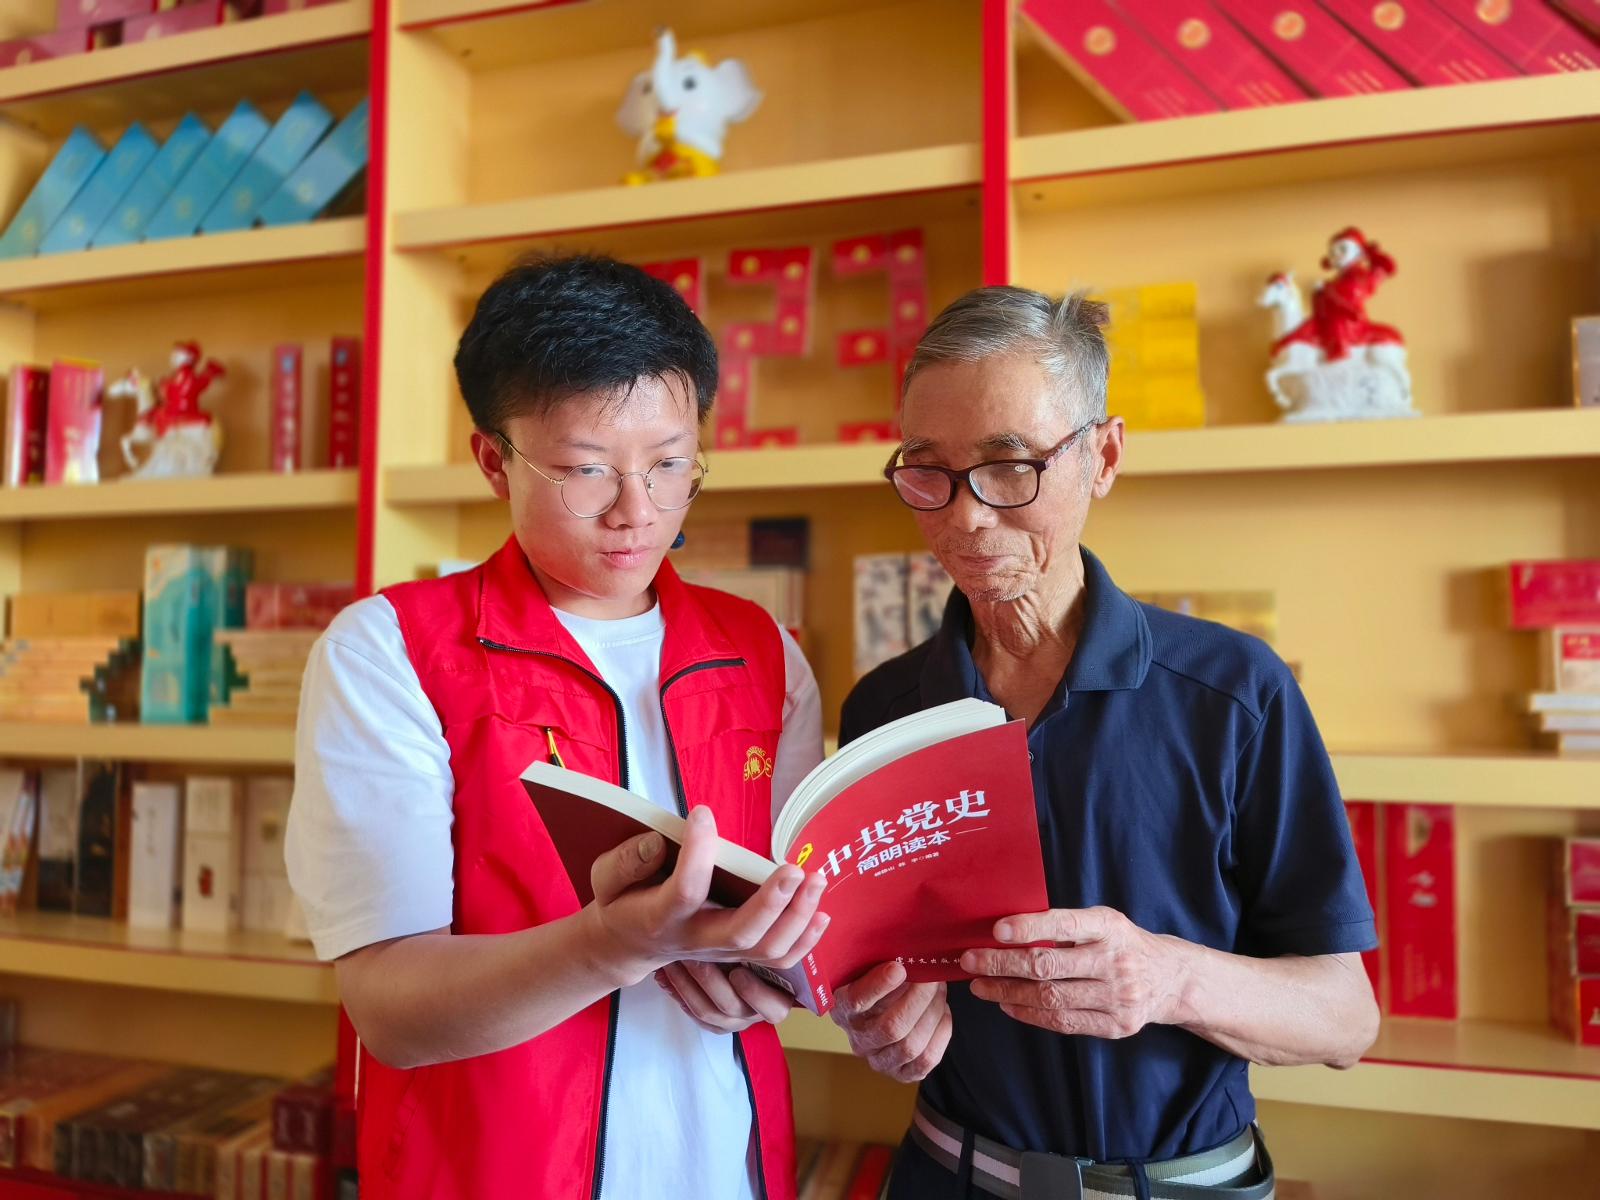 郑雨松正在和客户共读红色书籍.jpg